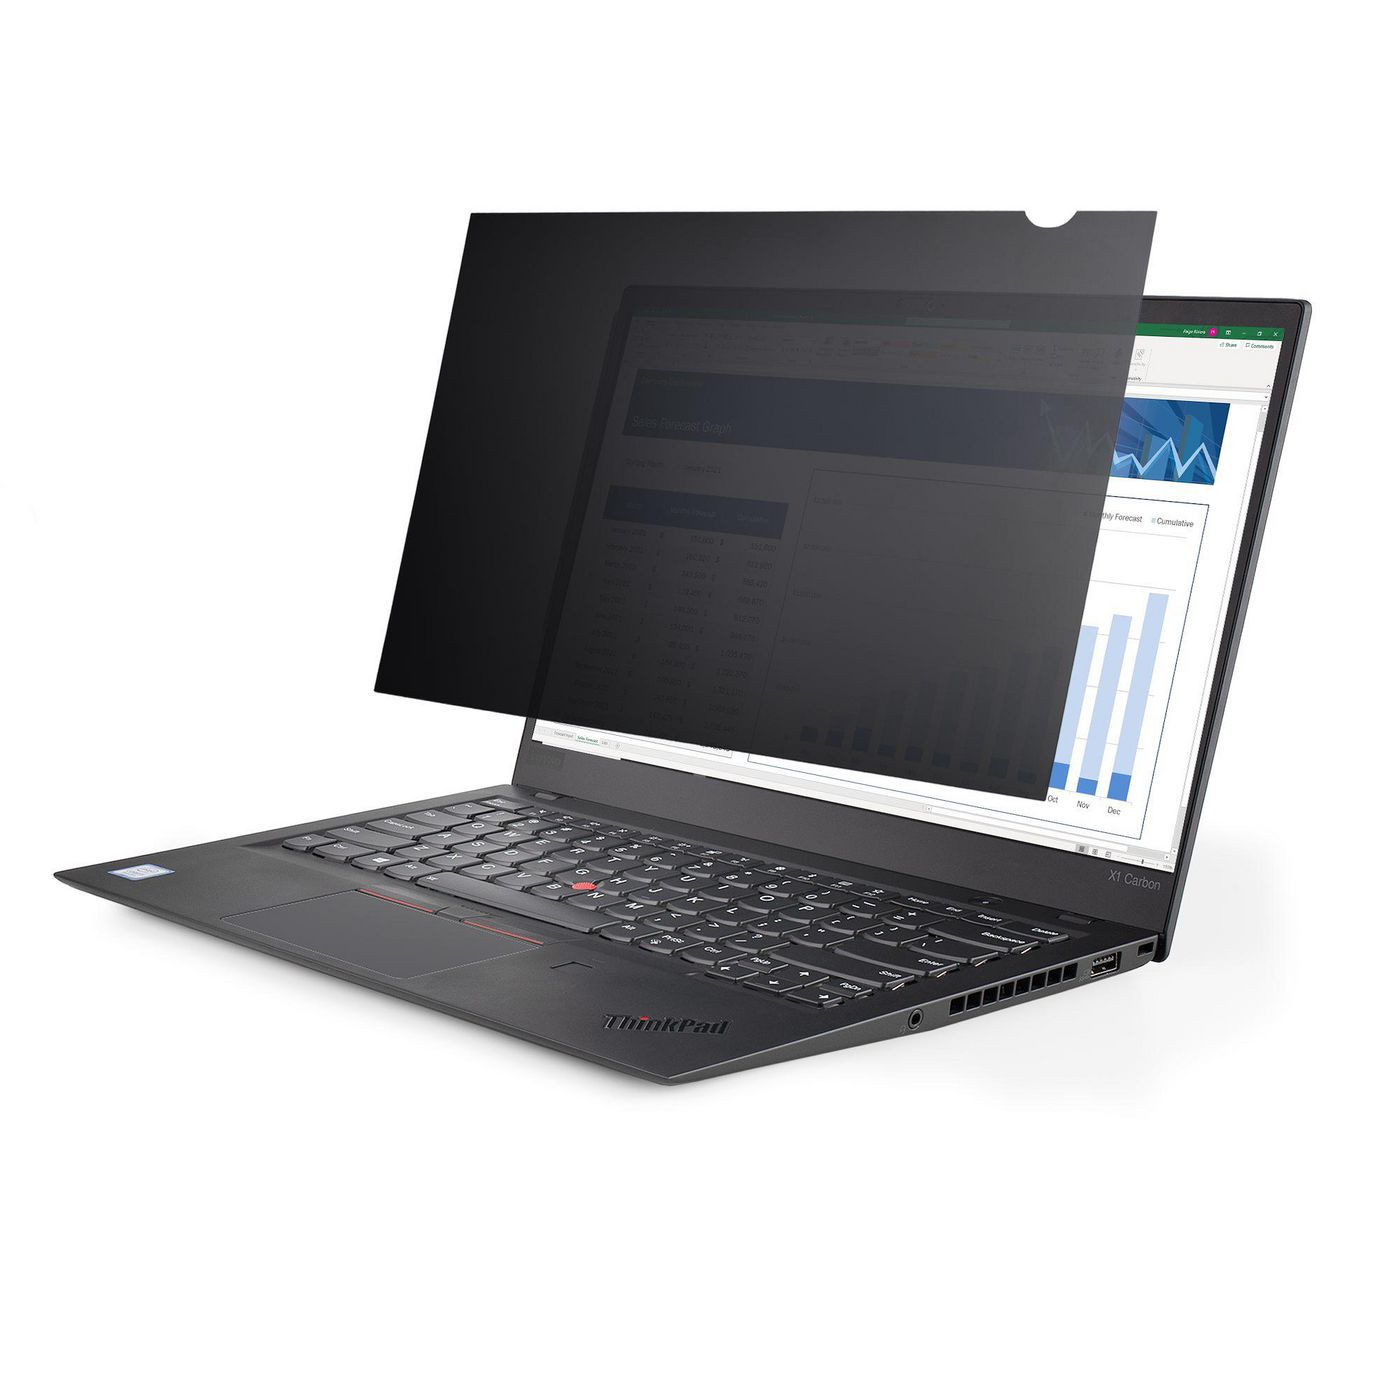 STARTECH.COM 33,78cm 13,3Zoll Laptop Sichtschutzfolie - Blickschutzfilter/Spionfolie fur Widescreen